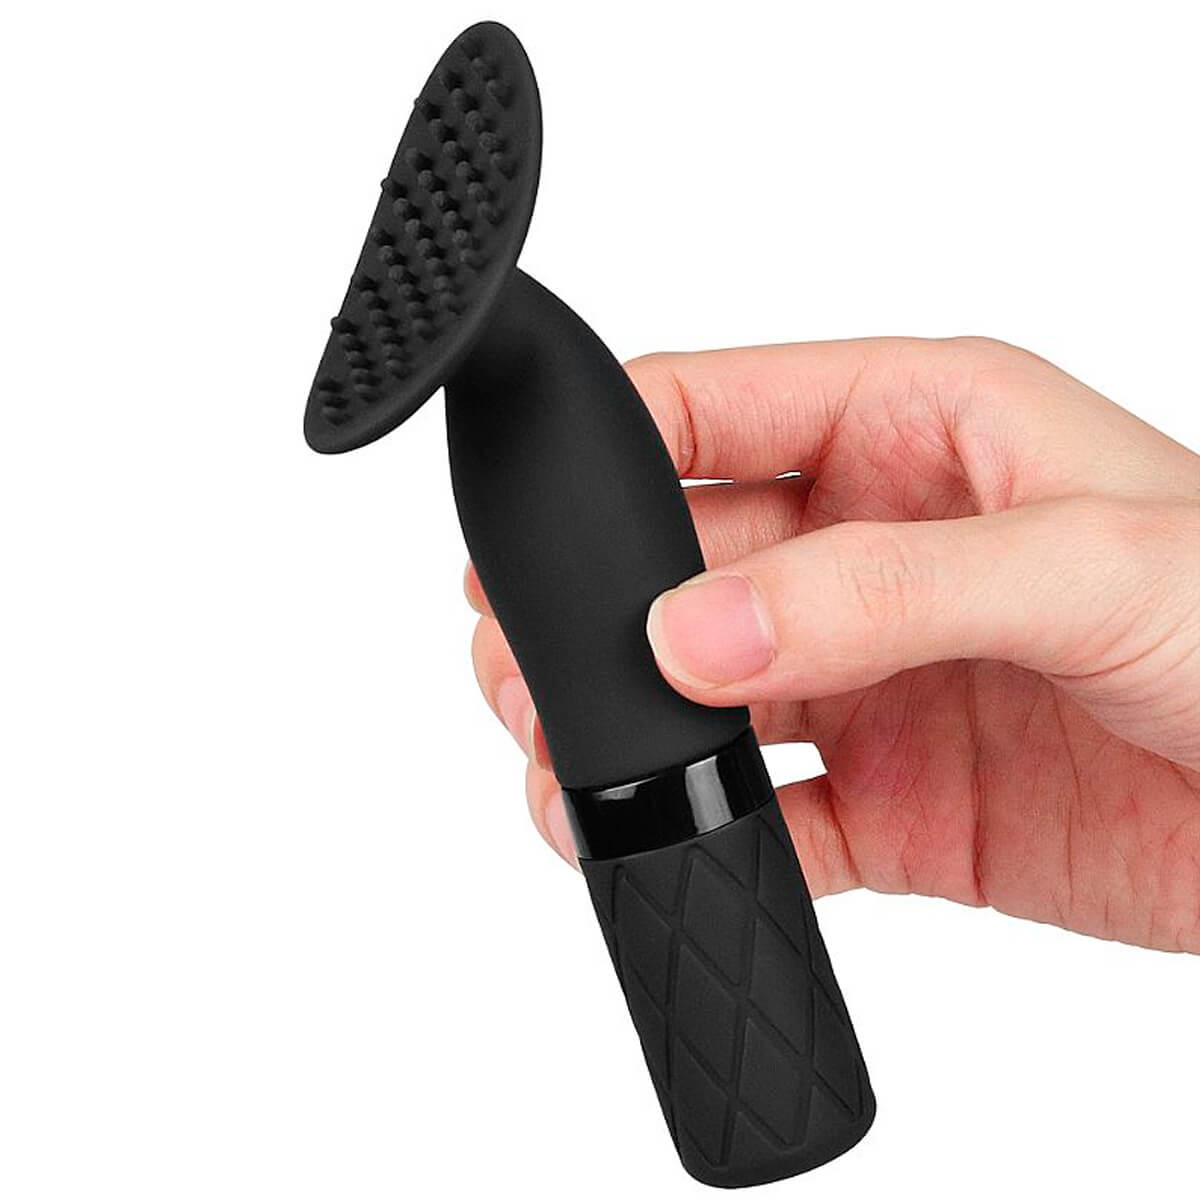 Lovetoy O-Sensual Clit Jiggle Massageador e Estimulador de Clitóris com Vibração Miss Collection